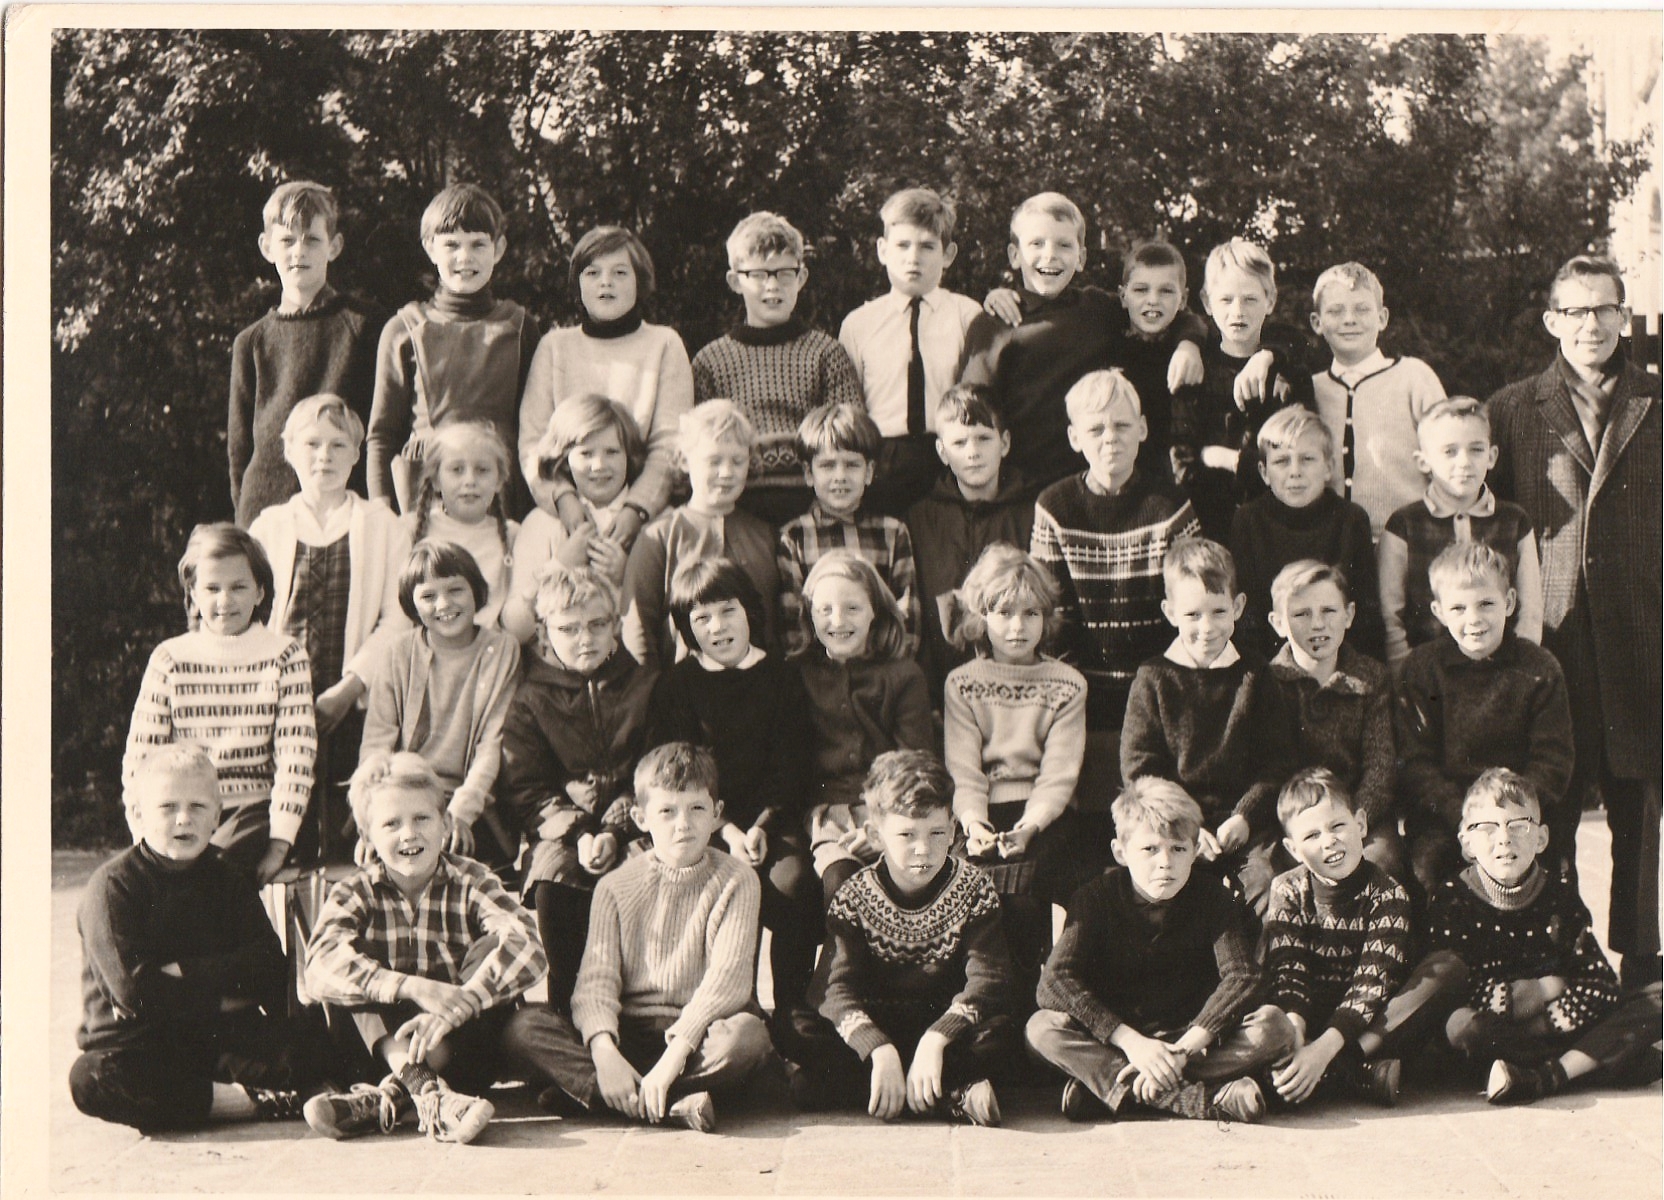 Jan Lighthartschool openbaar lager onderwijs foto